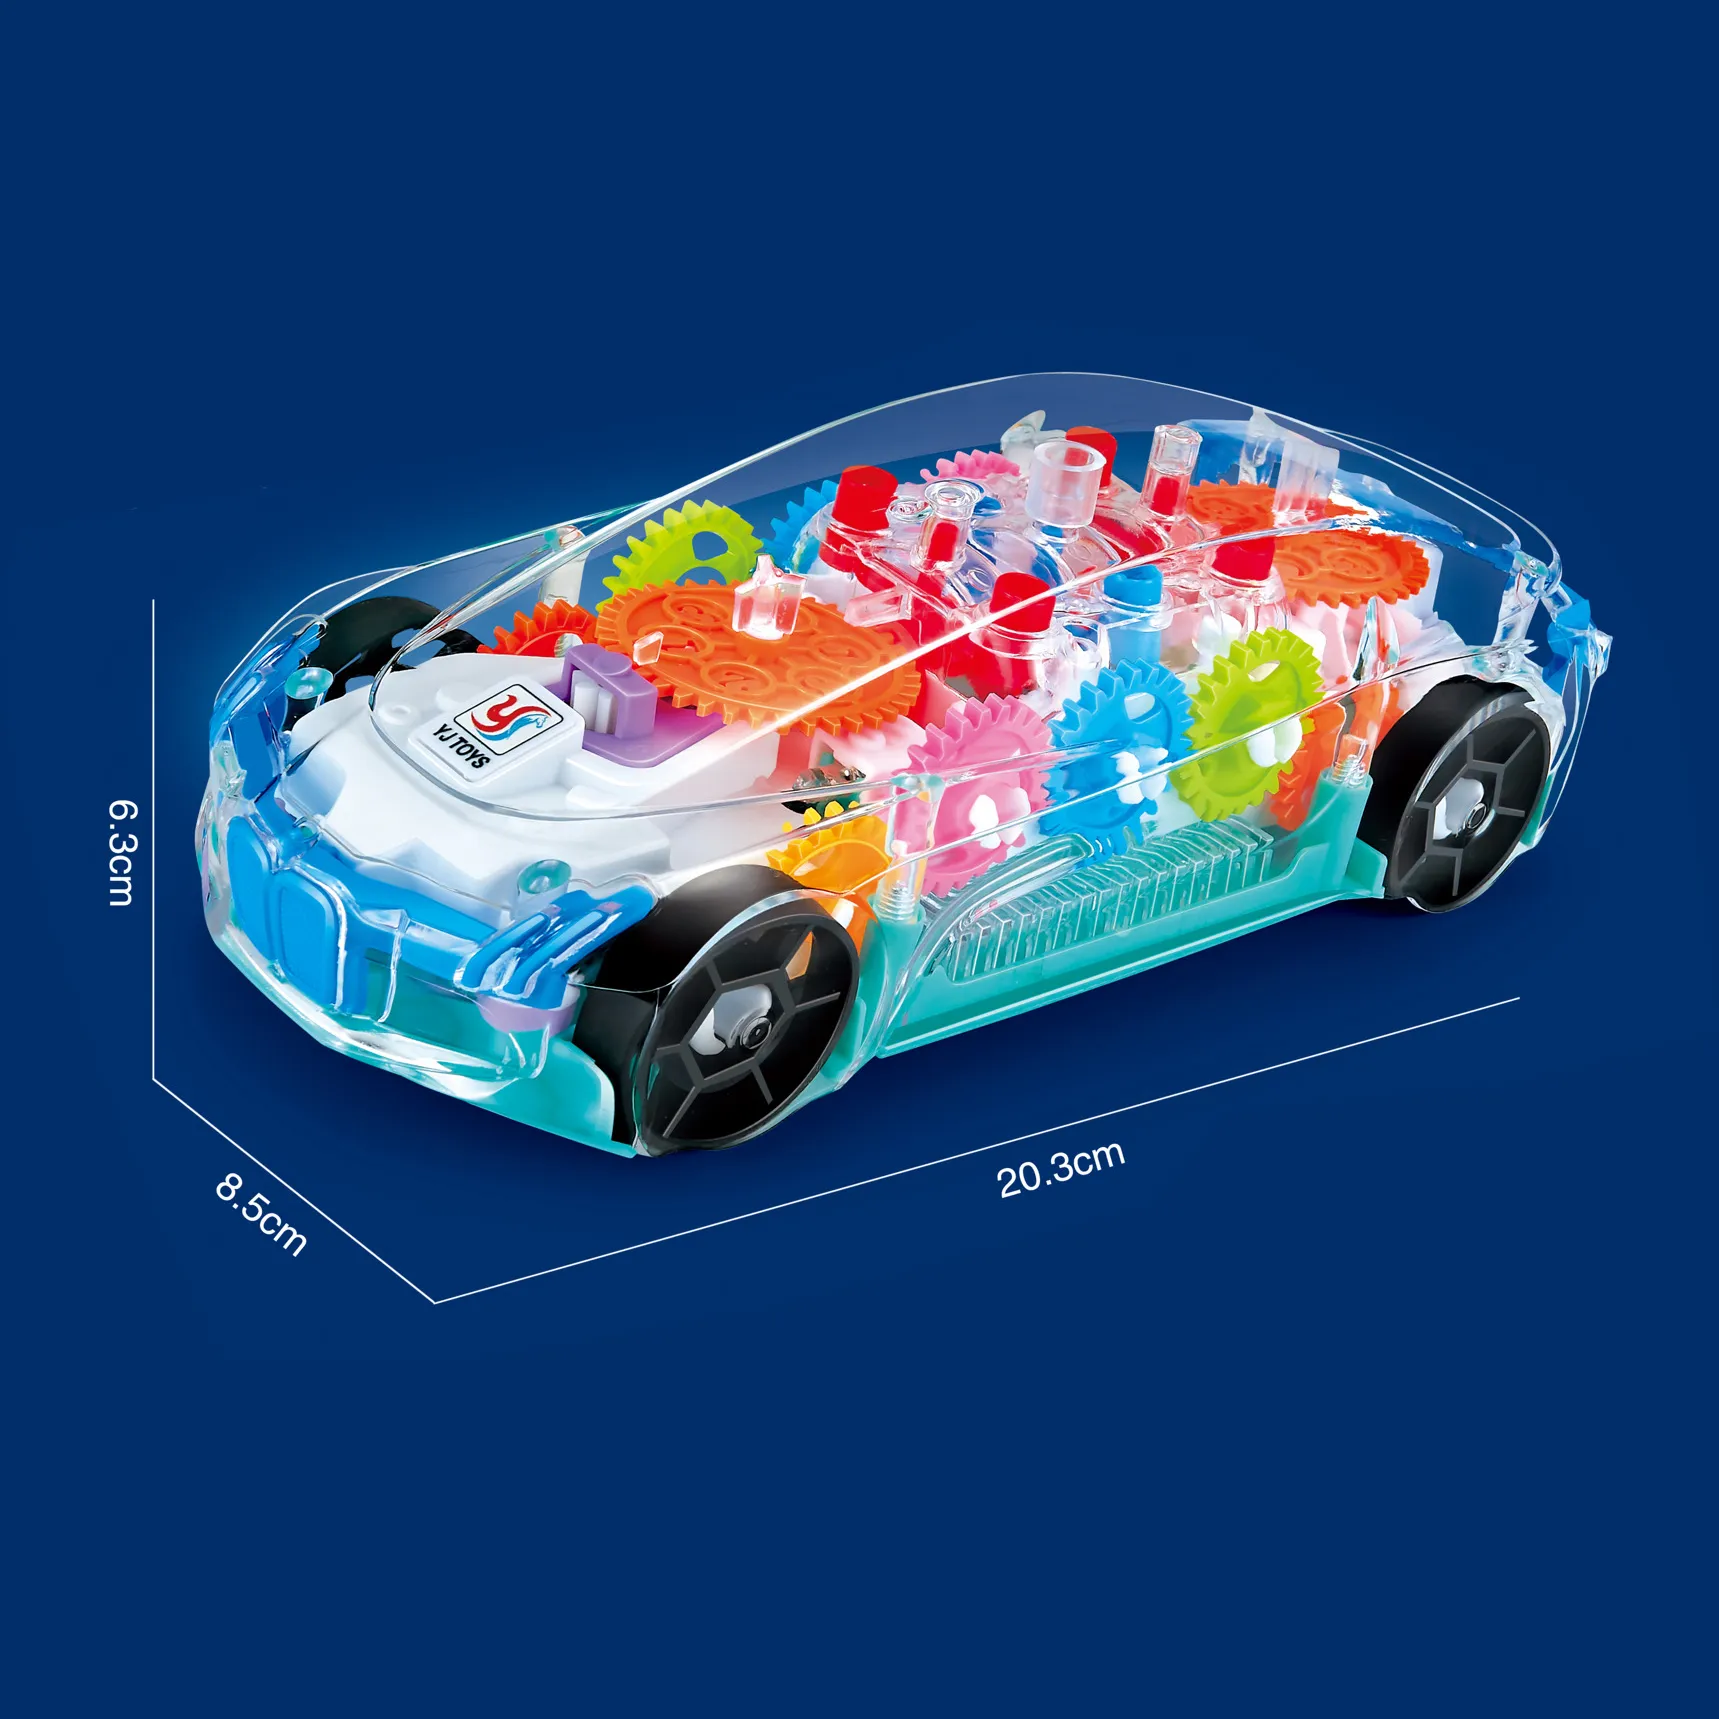 Elektrisches transparentes Spielzeugauto, durchsichtige Autos, mechanisches, batteriebetriebenes Rennfahrzeug, Spielzeug, sichtbare farbige bewegliche Zahnräder, brillante LED-Lichteffekte, Musik